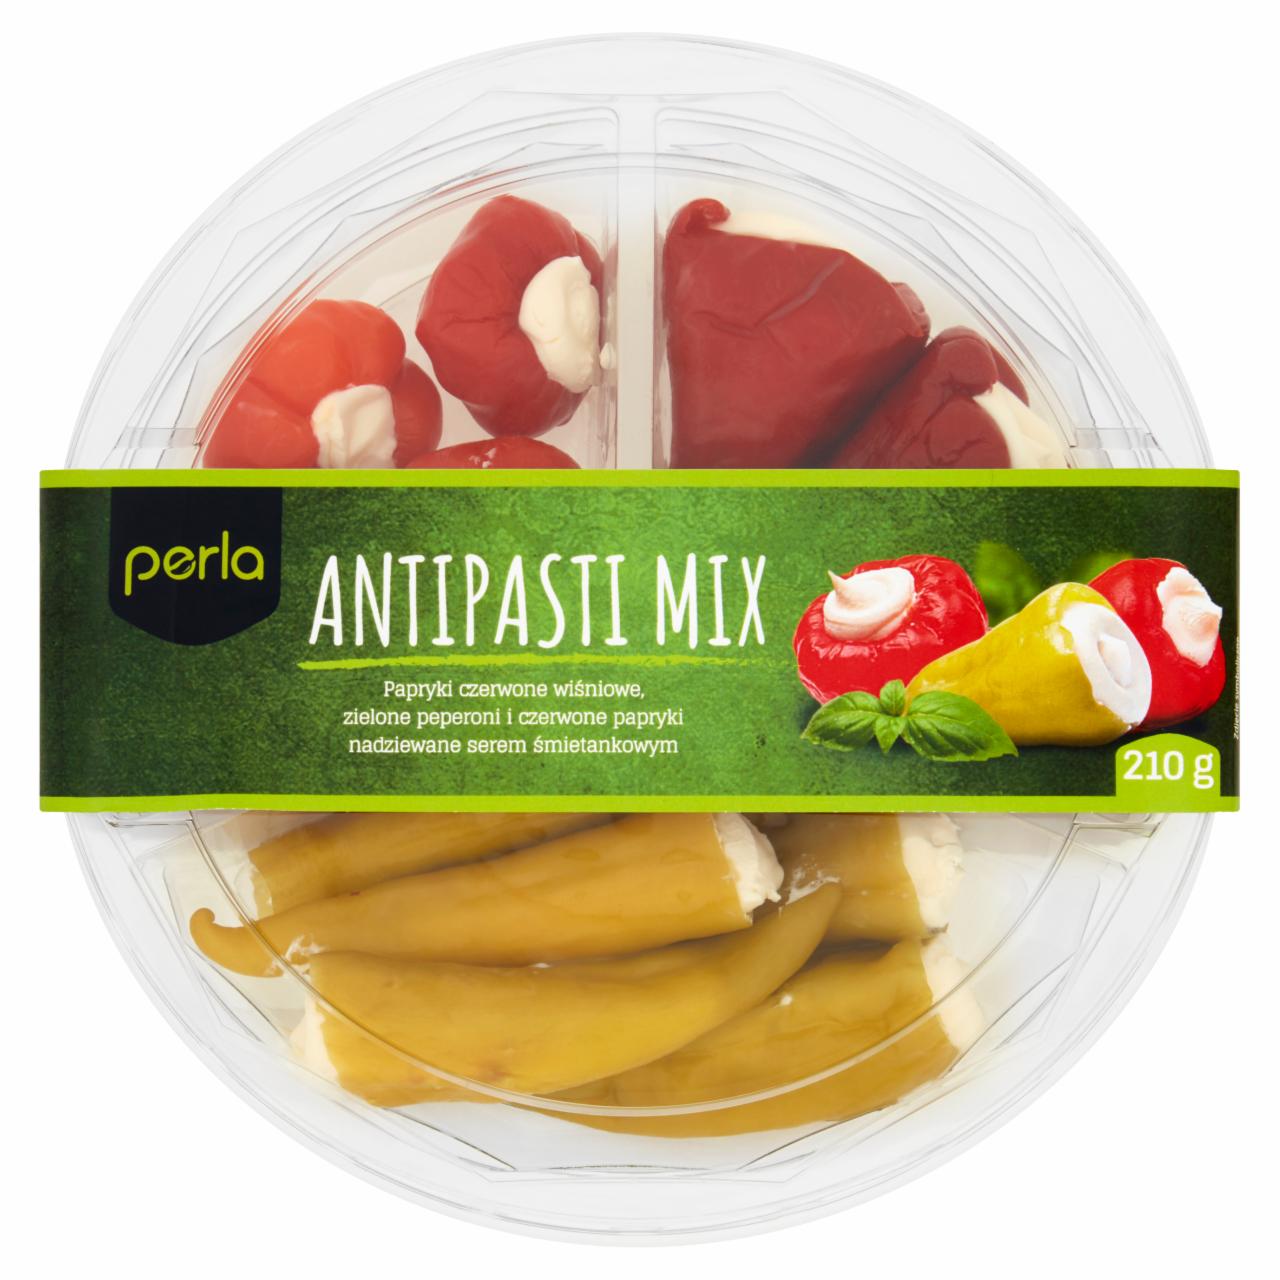 Zdjęcia - Perla Antipasti Mix Papryki wiśniowe & czerwone & peperoni 210 g